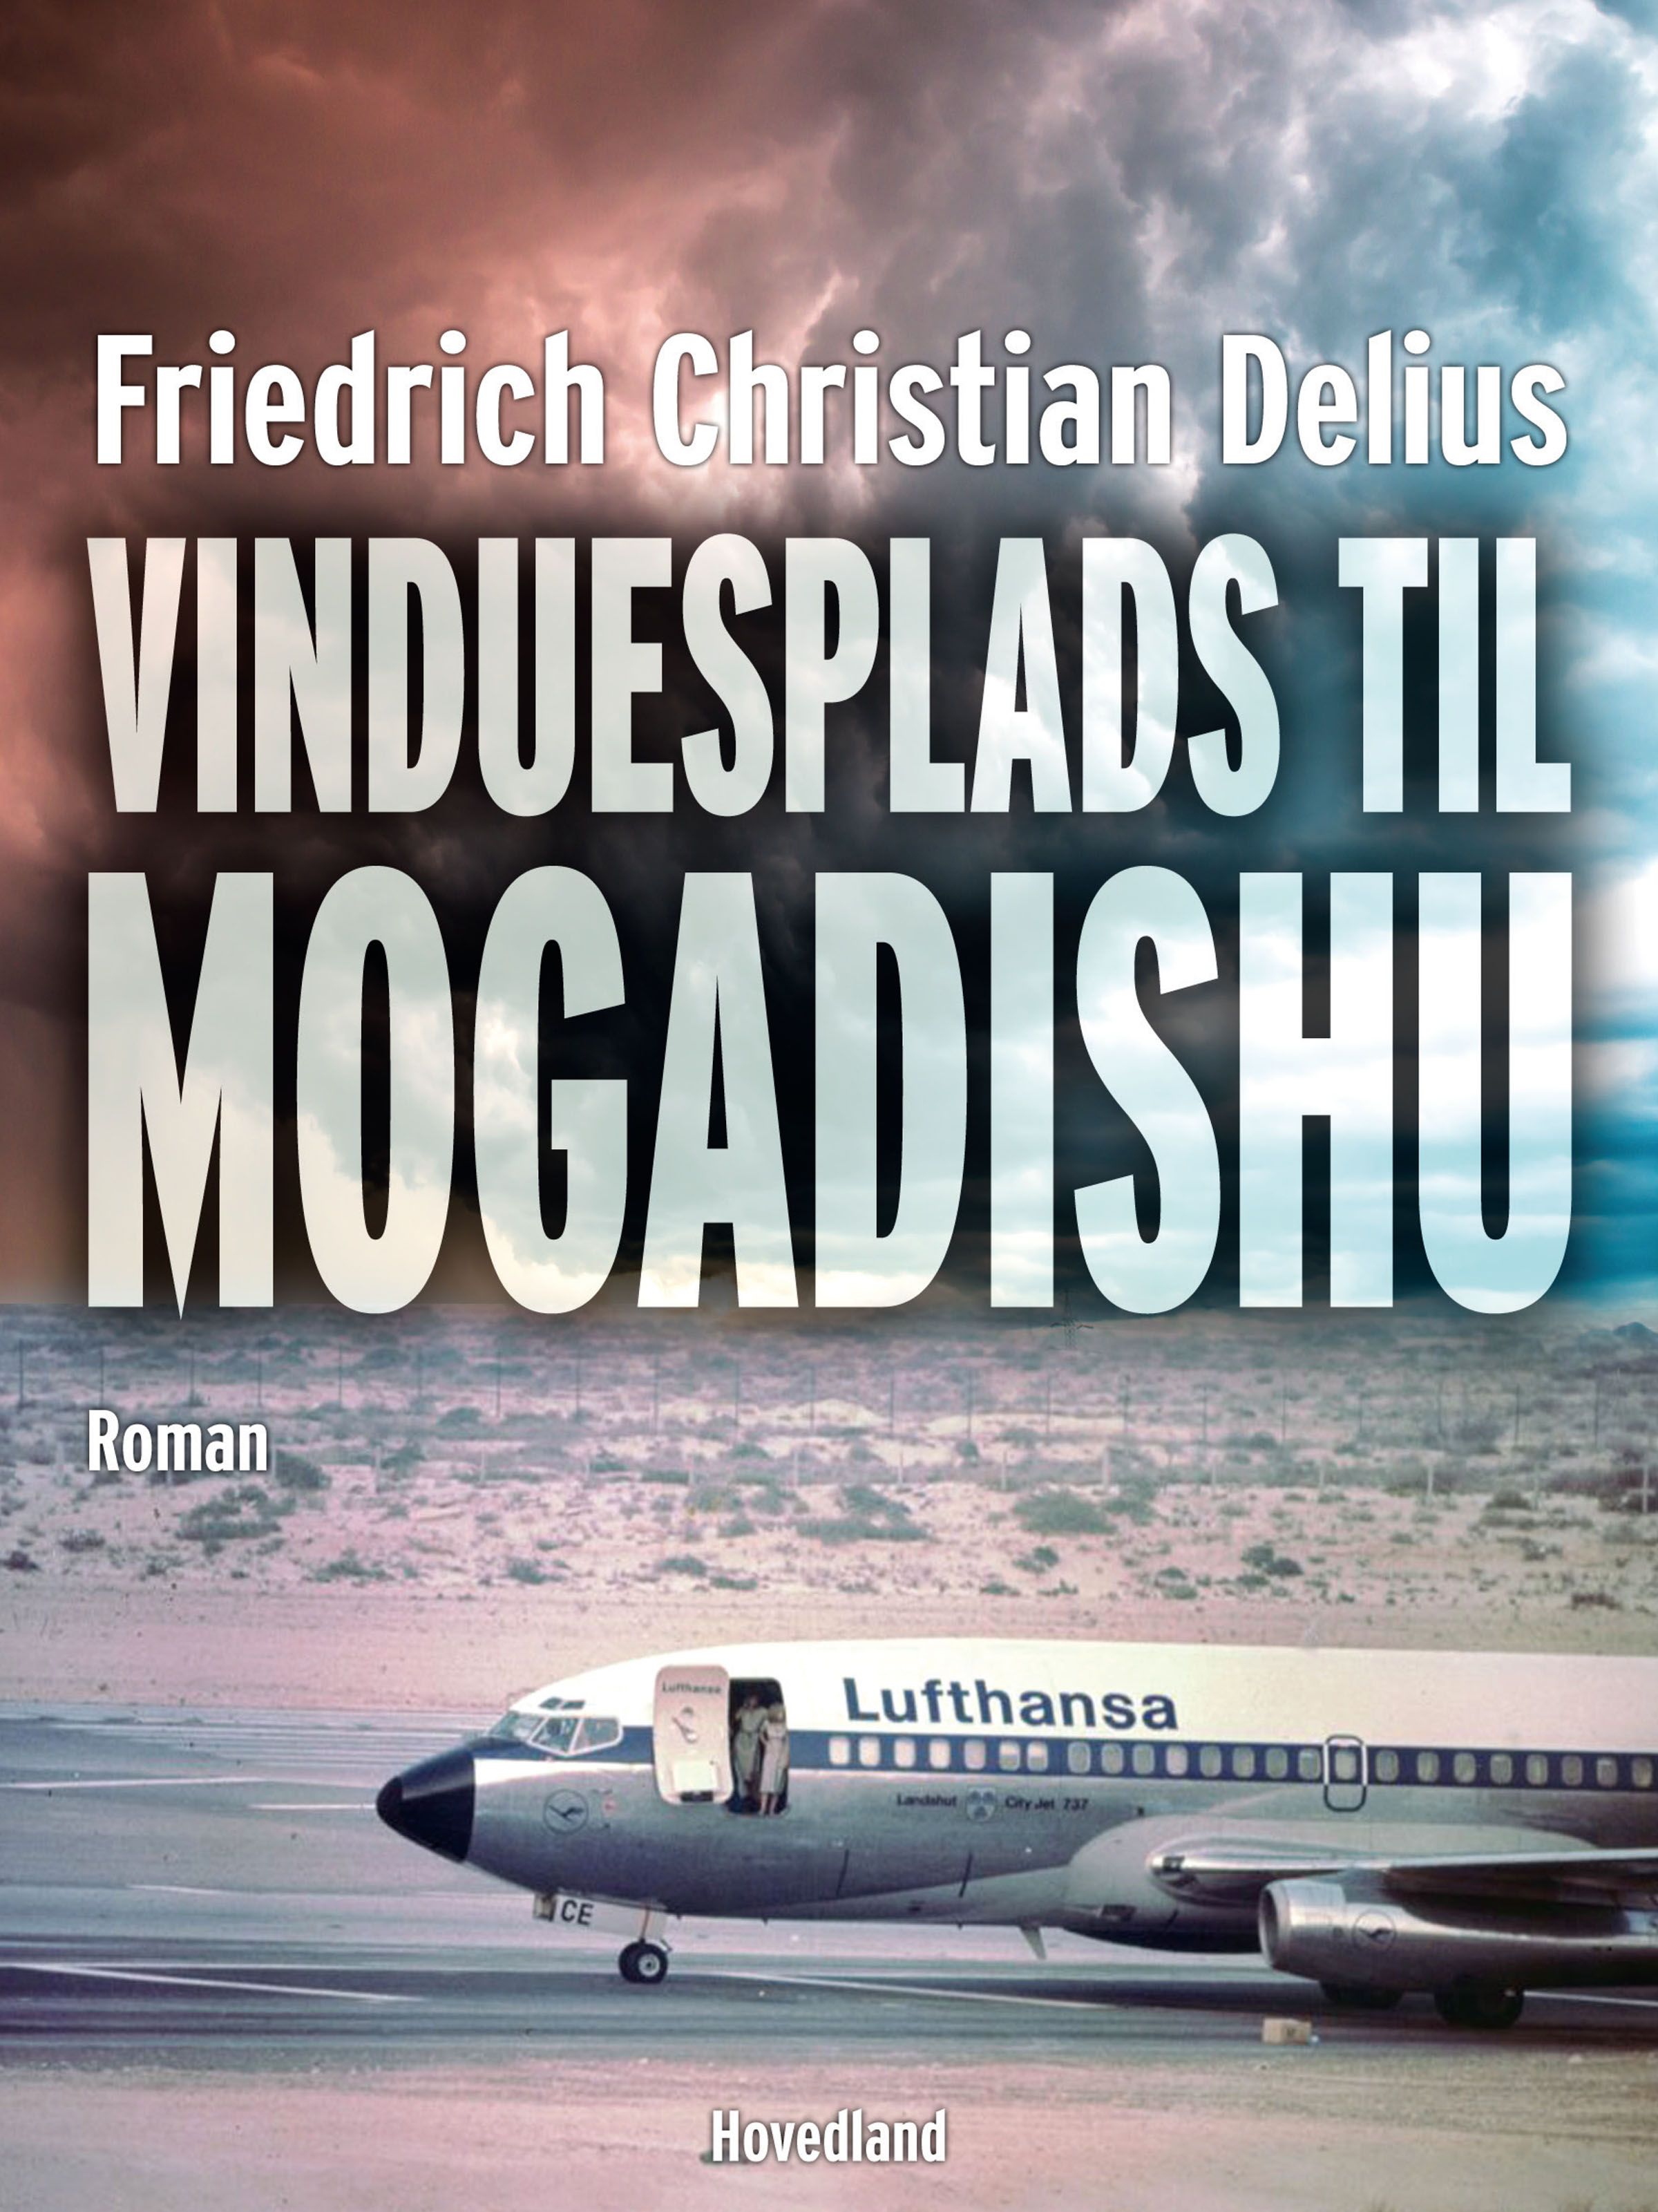 Vinduesplads Mogadishu, e-bok av Friedrich Christian Delius